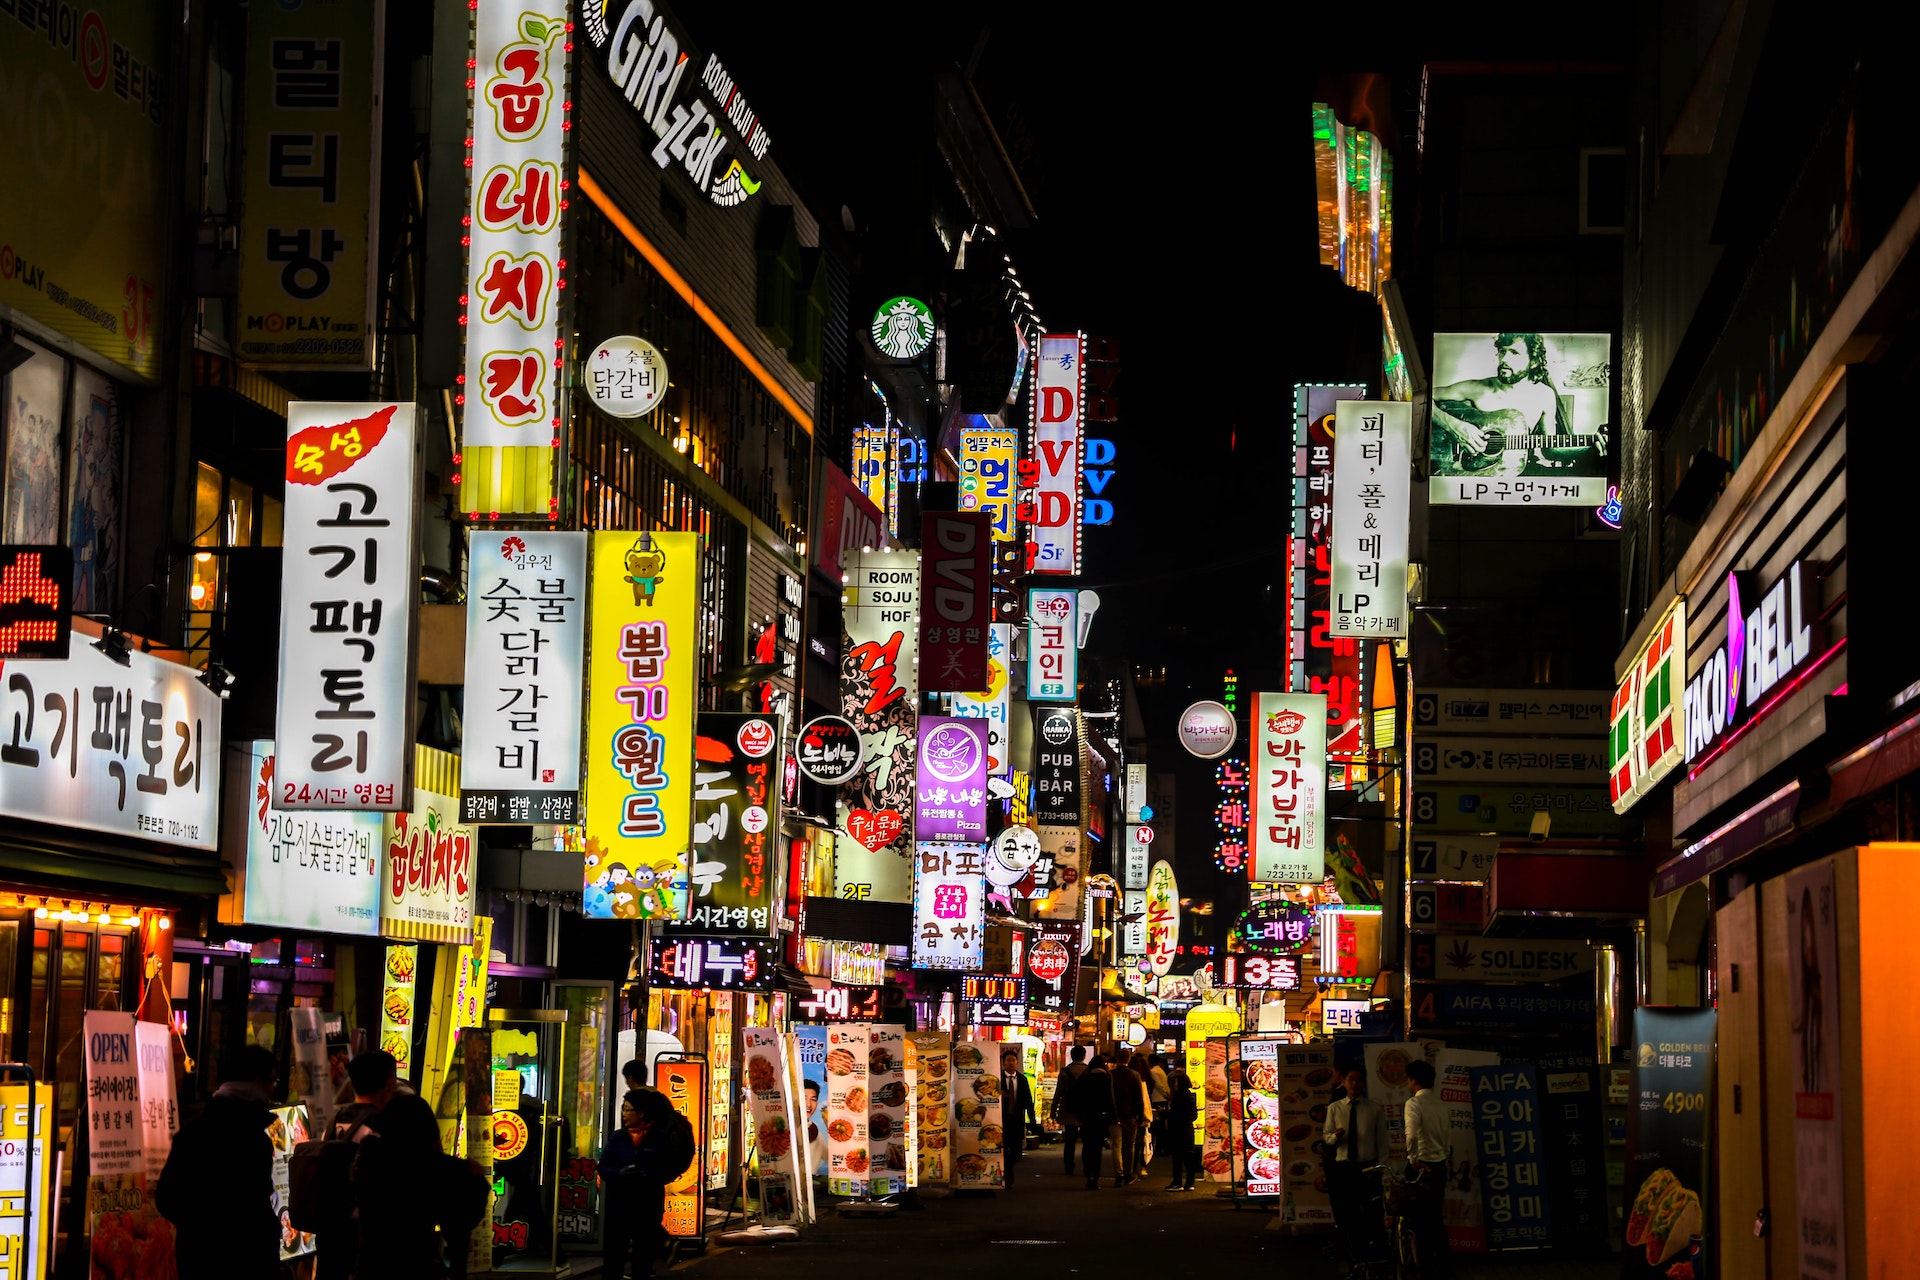 Les autorités sud-coréennes perquisitionnent les plateformes Upbit et Bithumb après un scandale politique